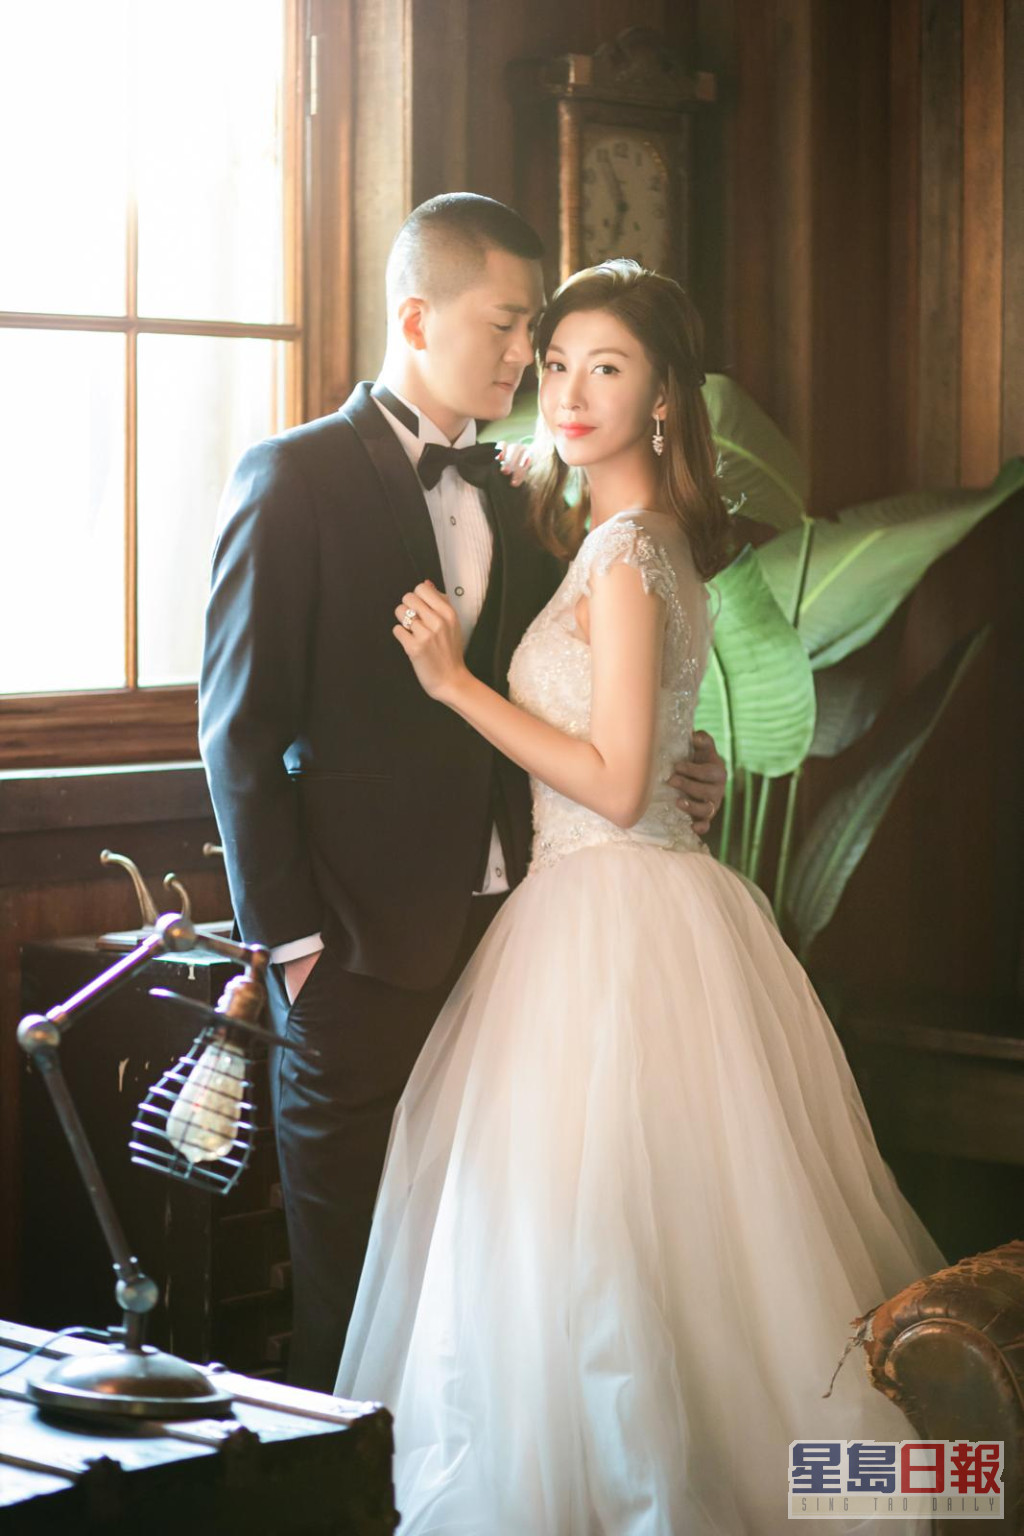 李彩华在2019年2月宣布与从事钢铁生意的内地商人黄彦书（Eric）结婚。